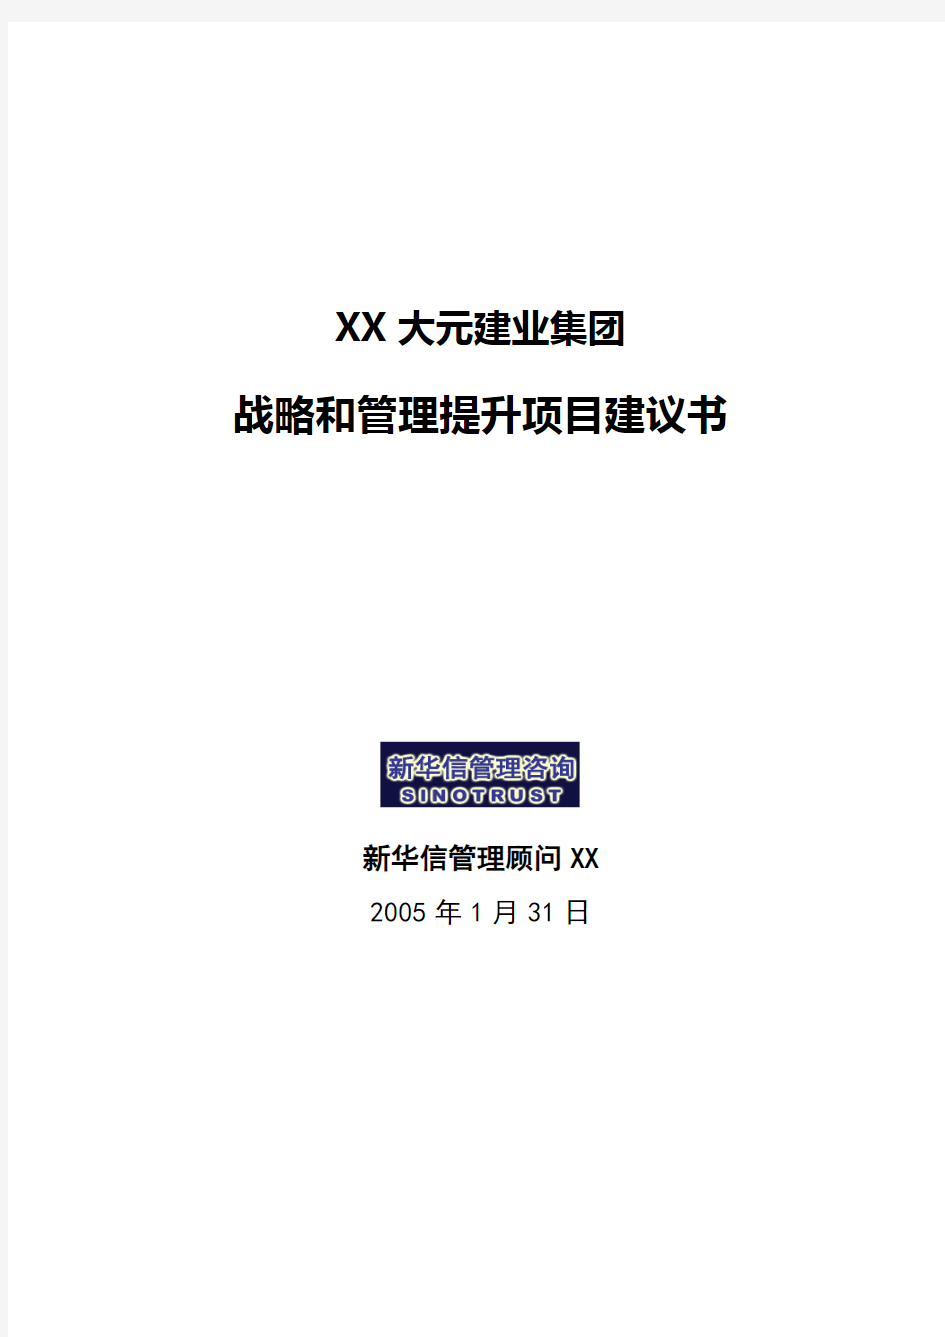 大元集团战略和管理提升项目建议书-新华信XXXX0131